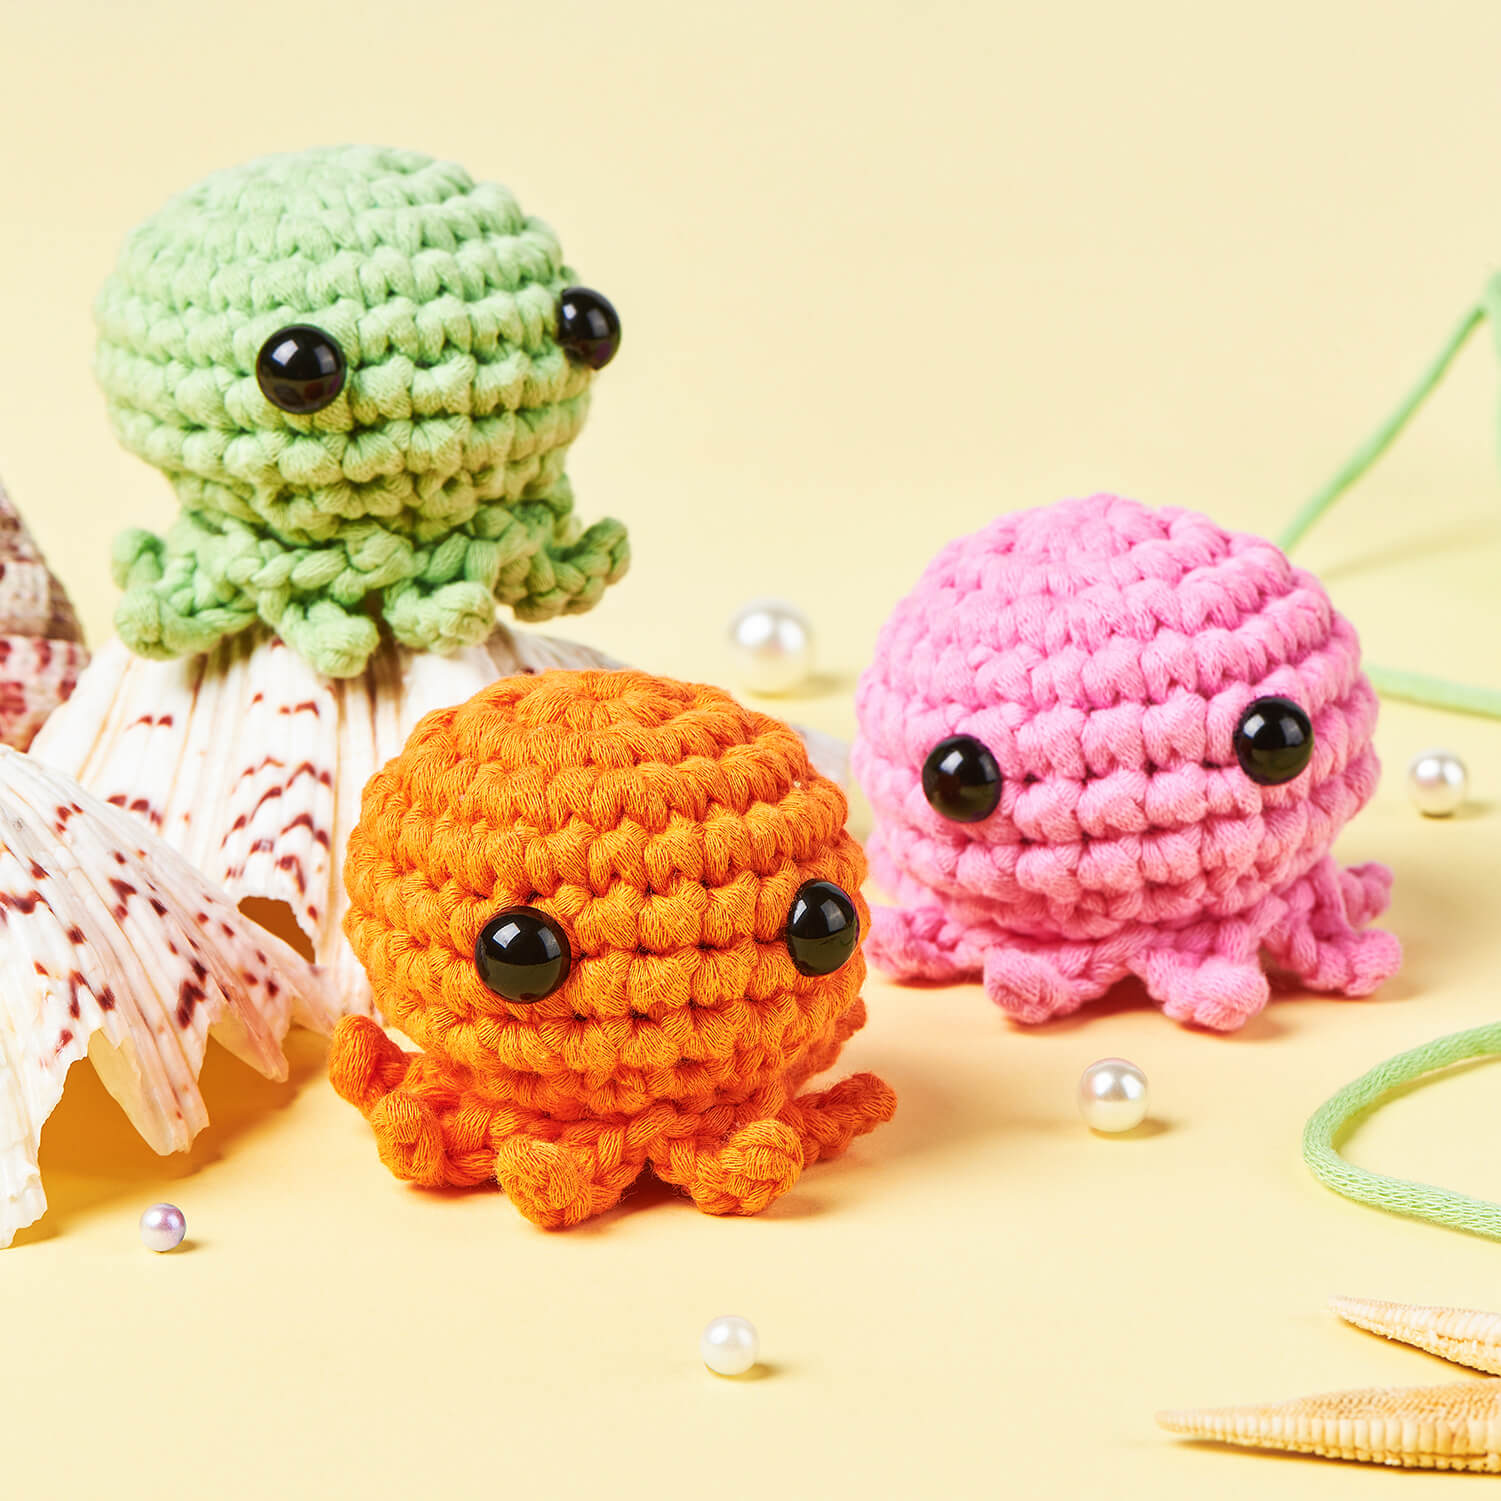 Learn to Crochet Kit!